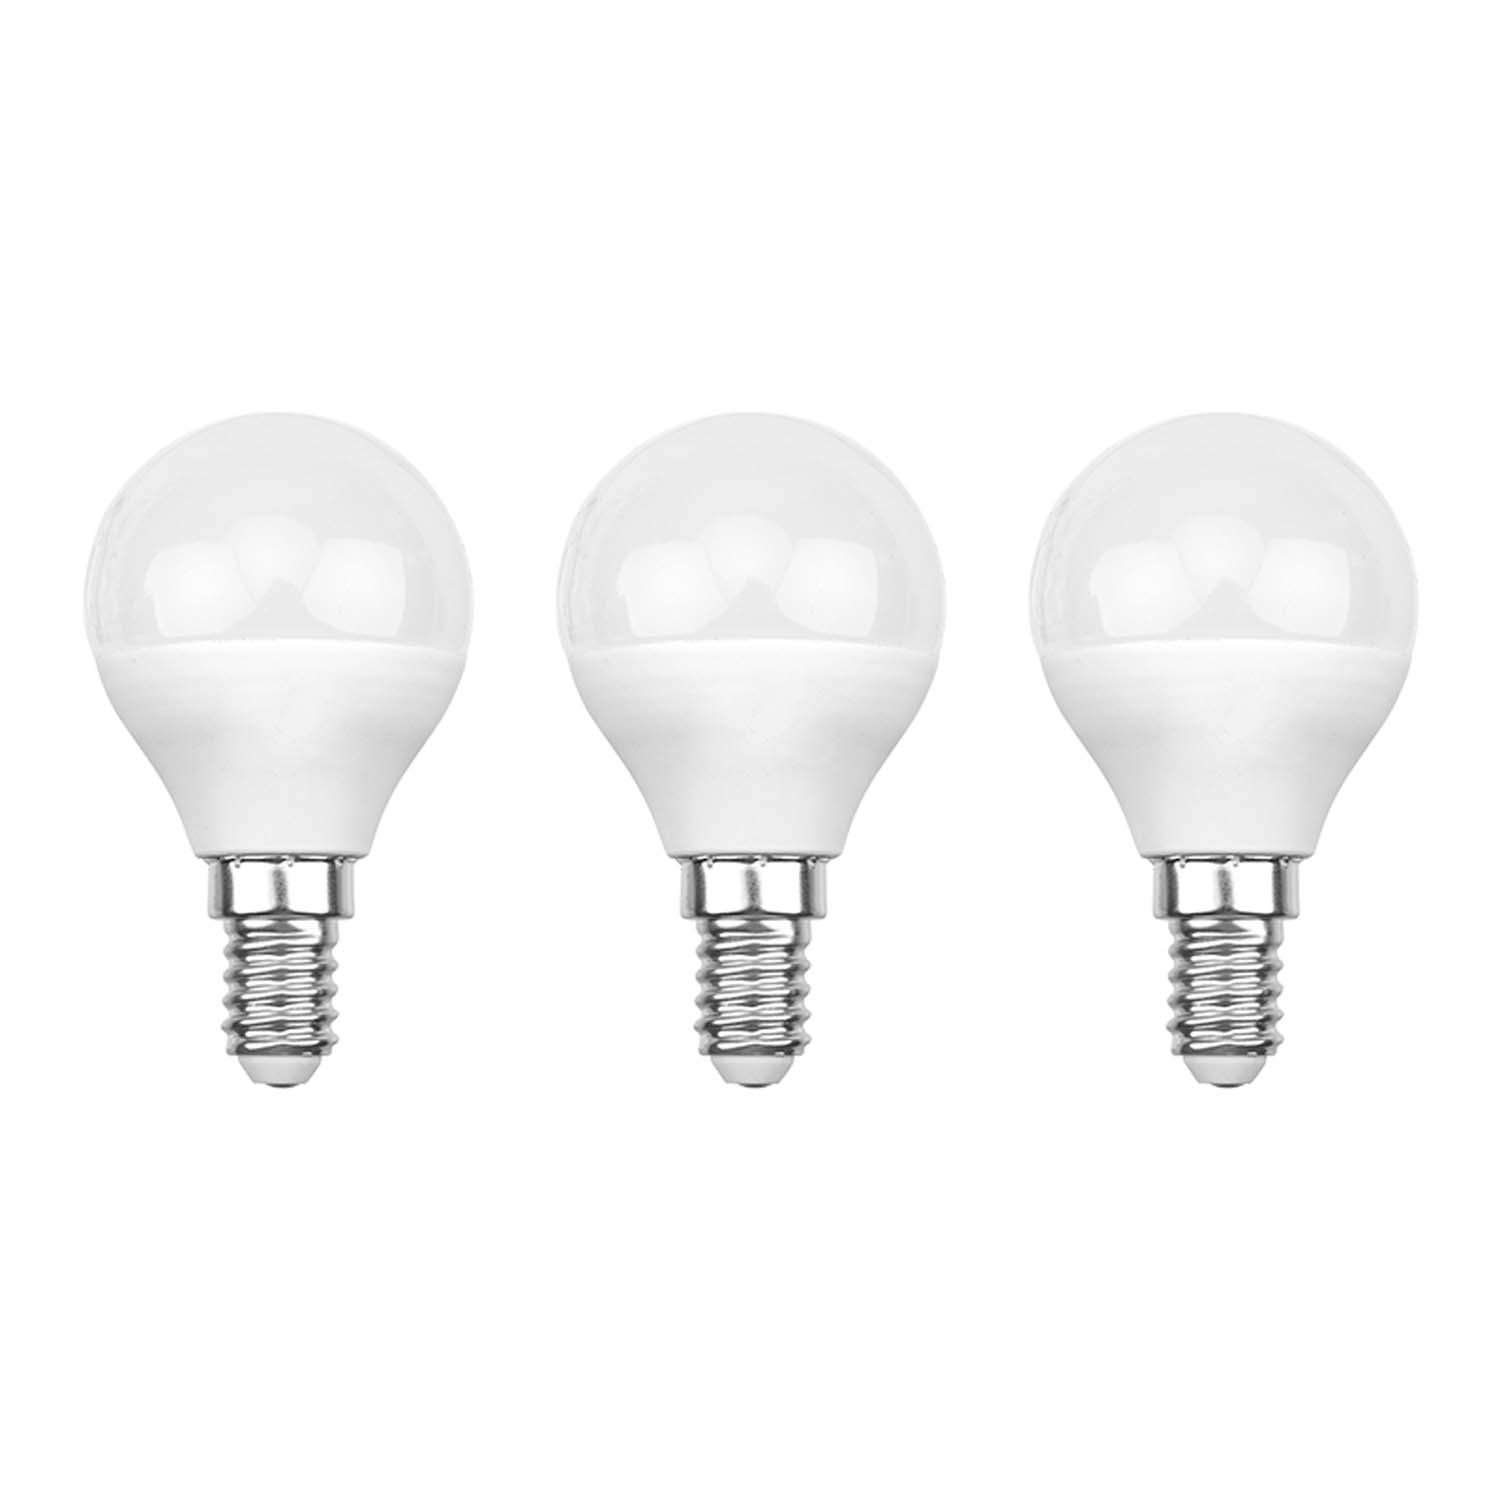 Лампа REXANT светодиодная Шарик GL 9.5Вт E14 903Лм 4000K нейтральный свет 3 штуки - фото 1